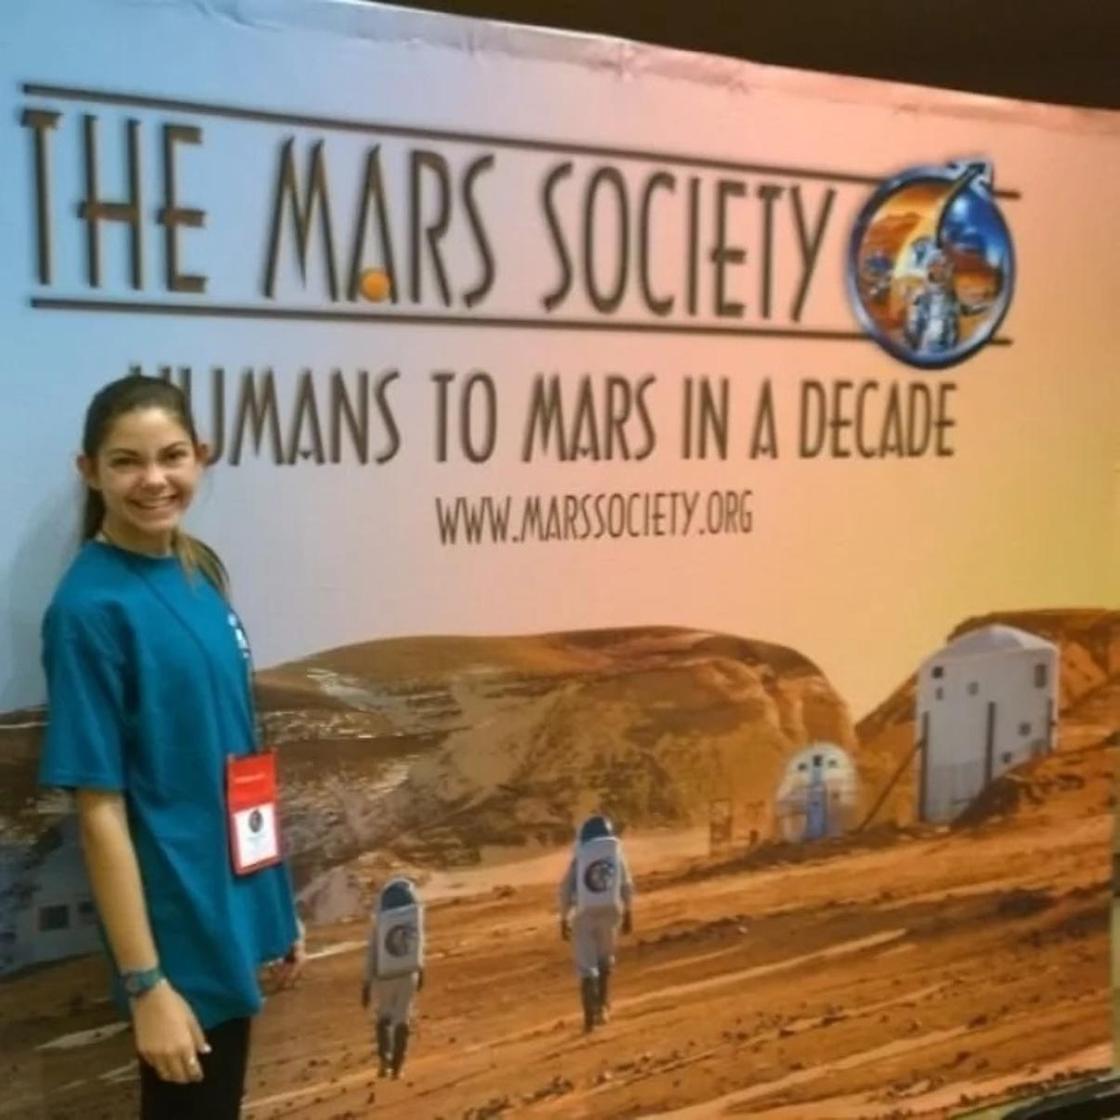 Алисса Карсон - девушка, которая собирается полететь на Марс